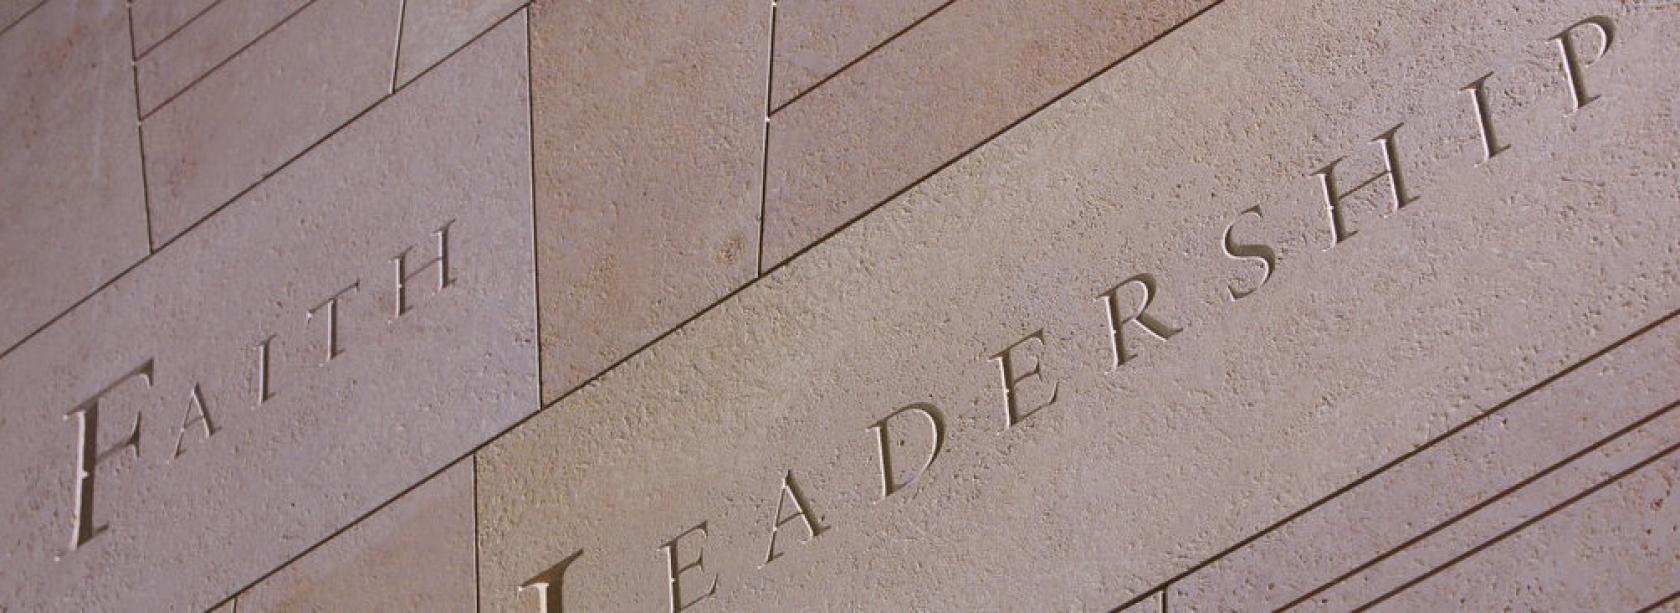 Faith Leadership stone wall